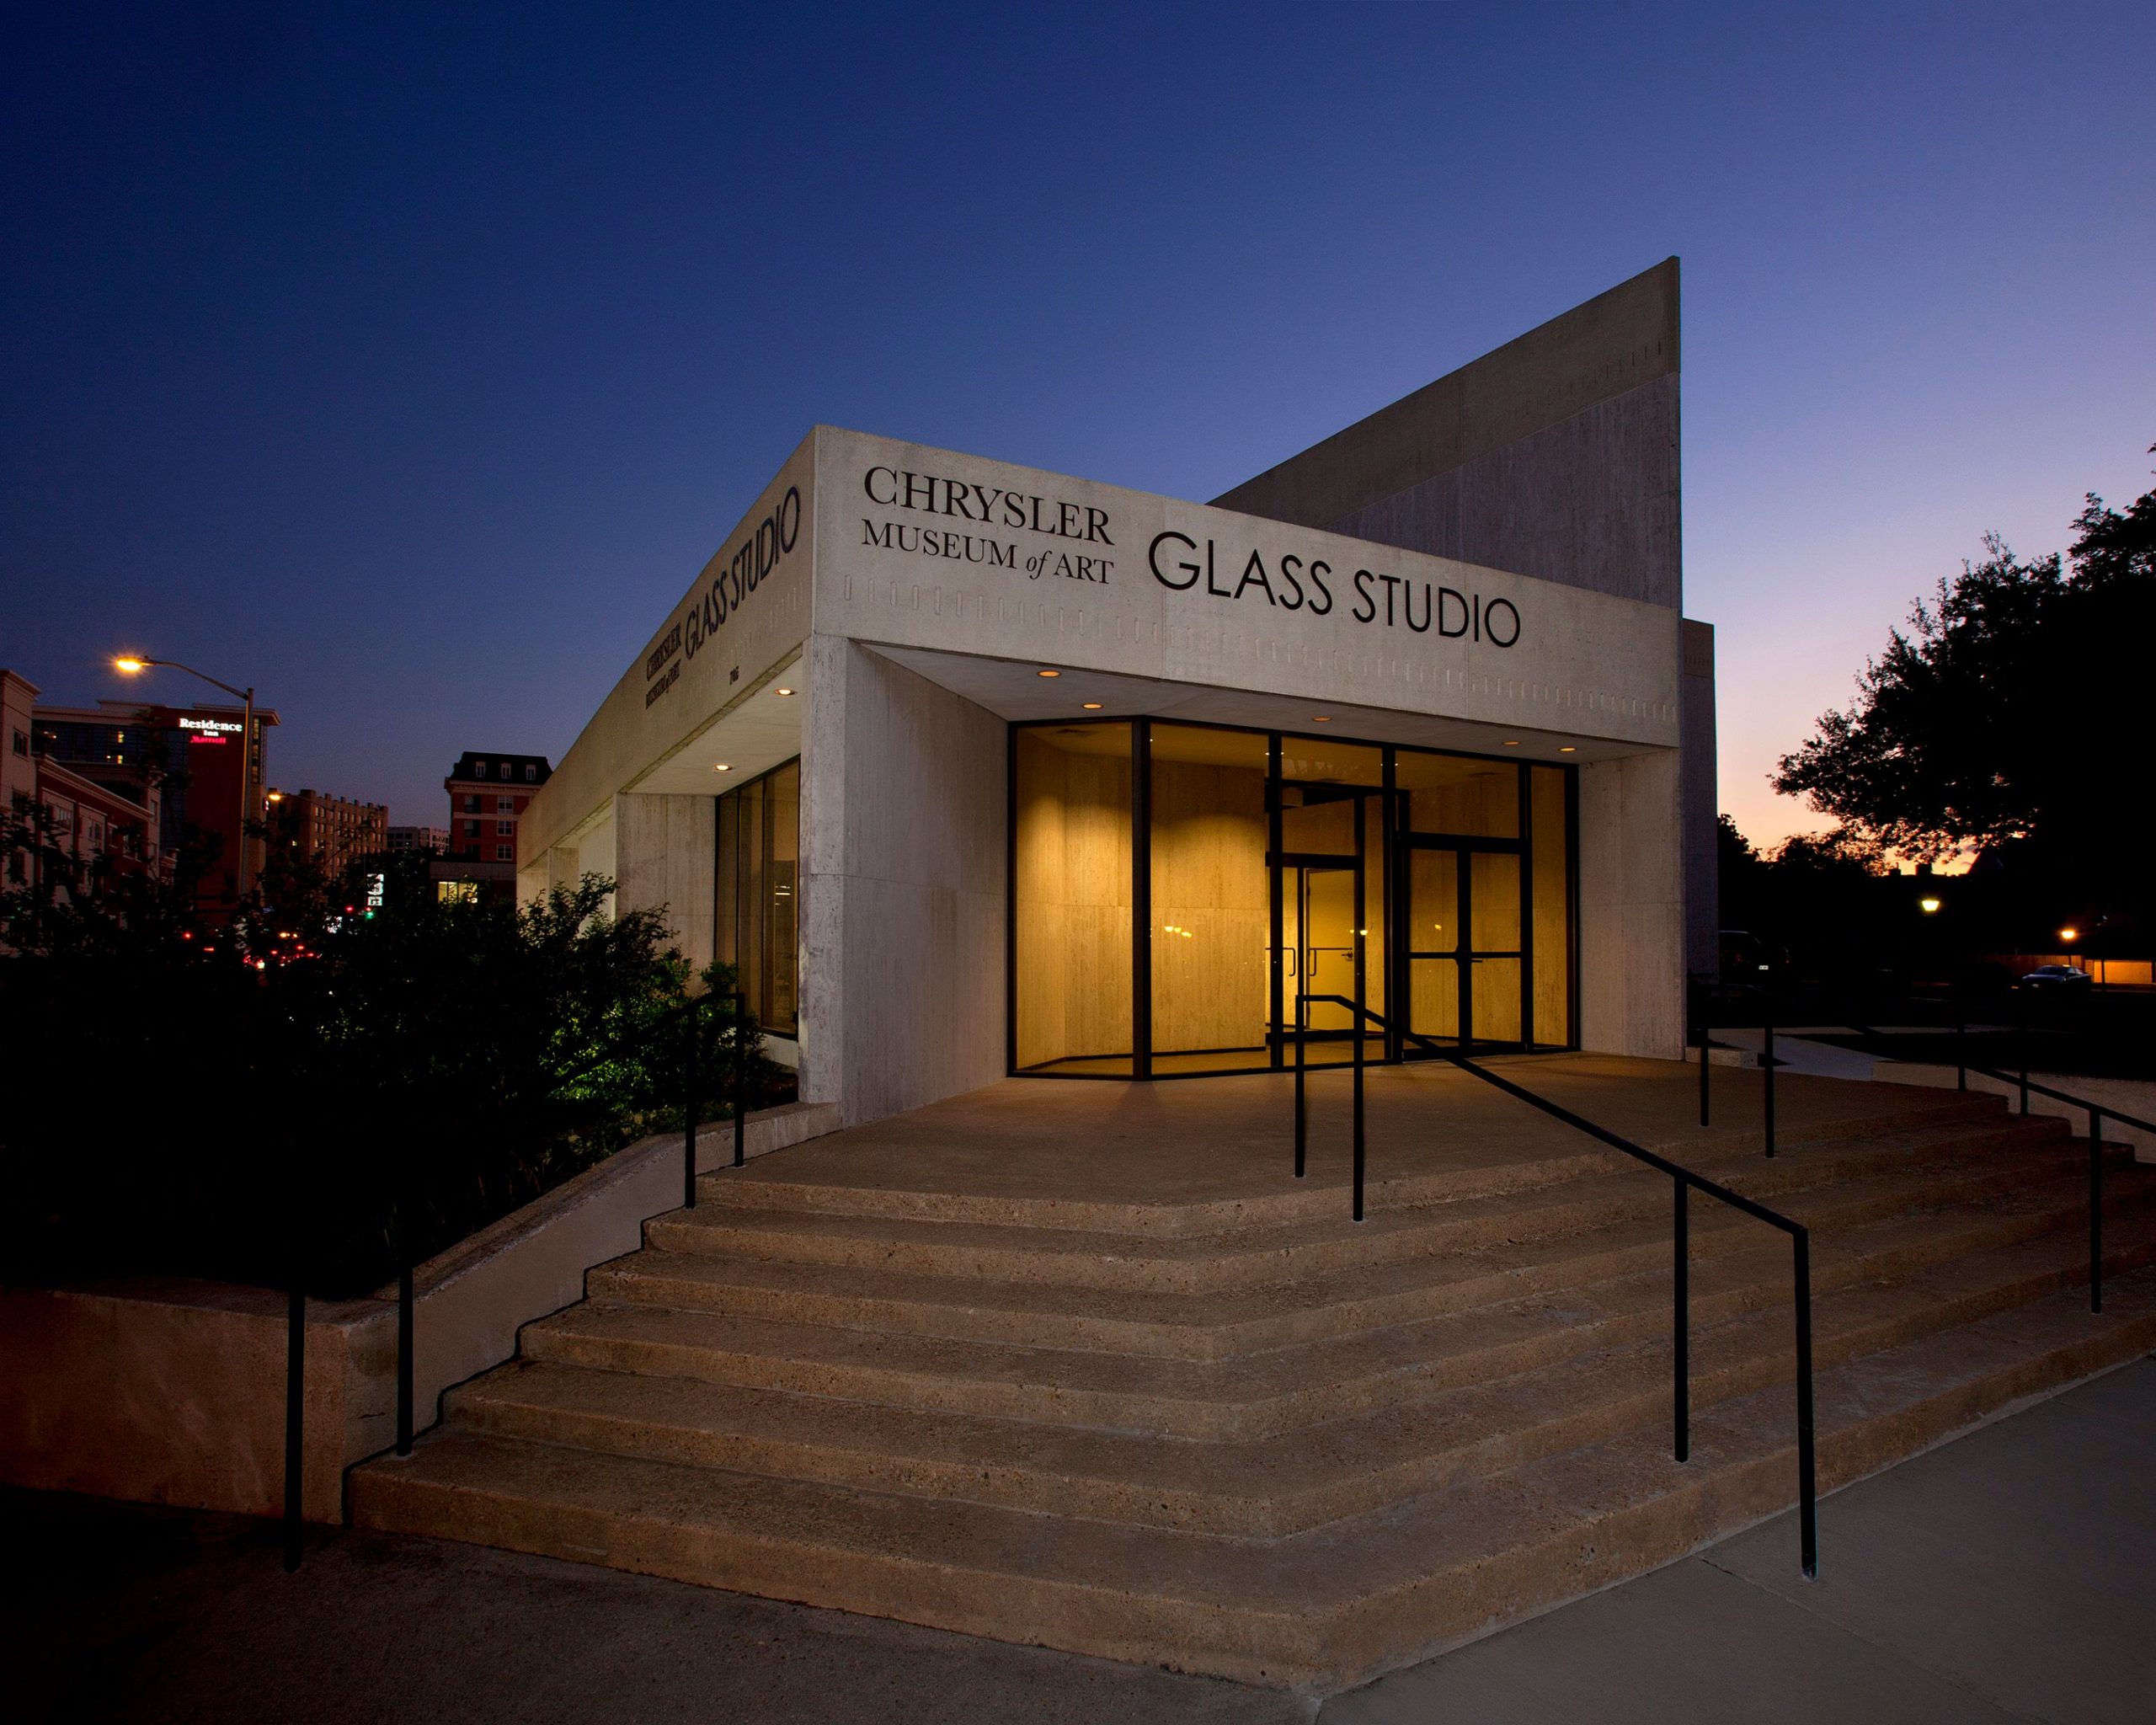 Glass Studio - Chrysler museum of art